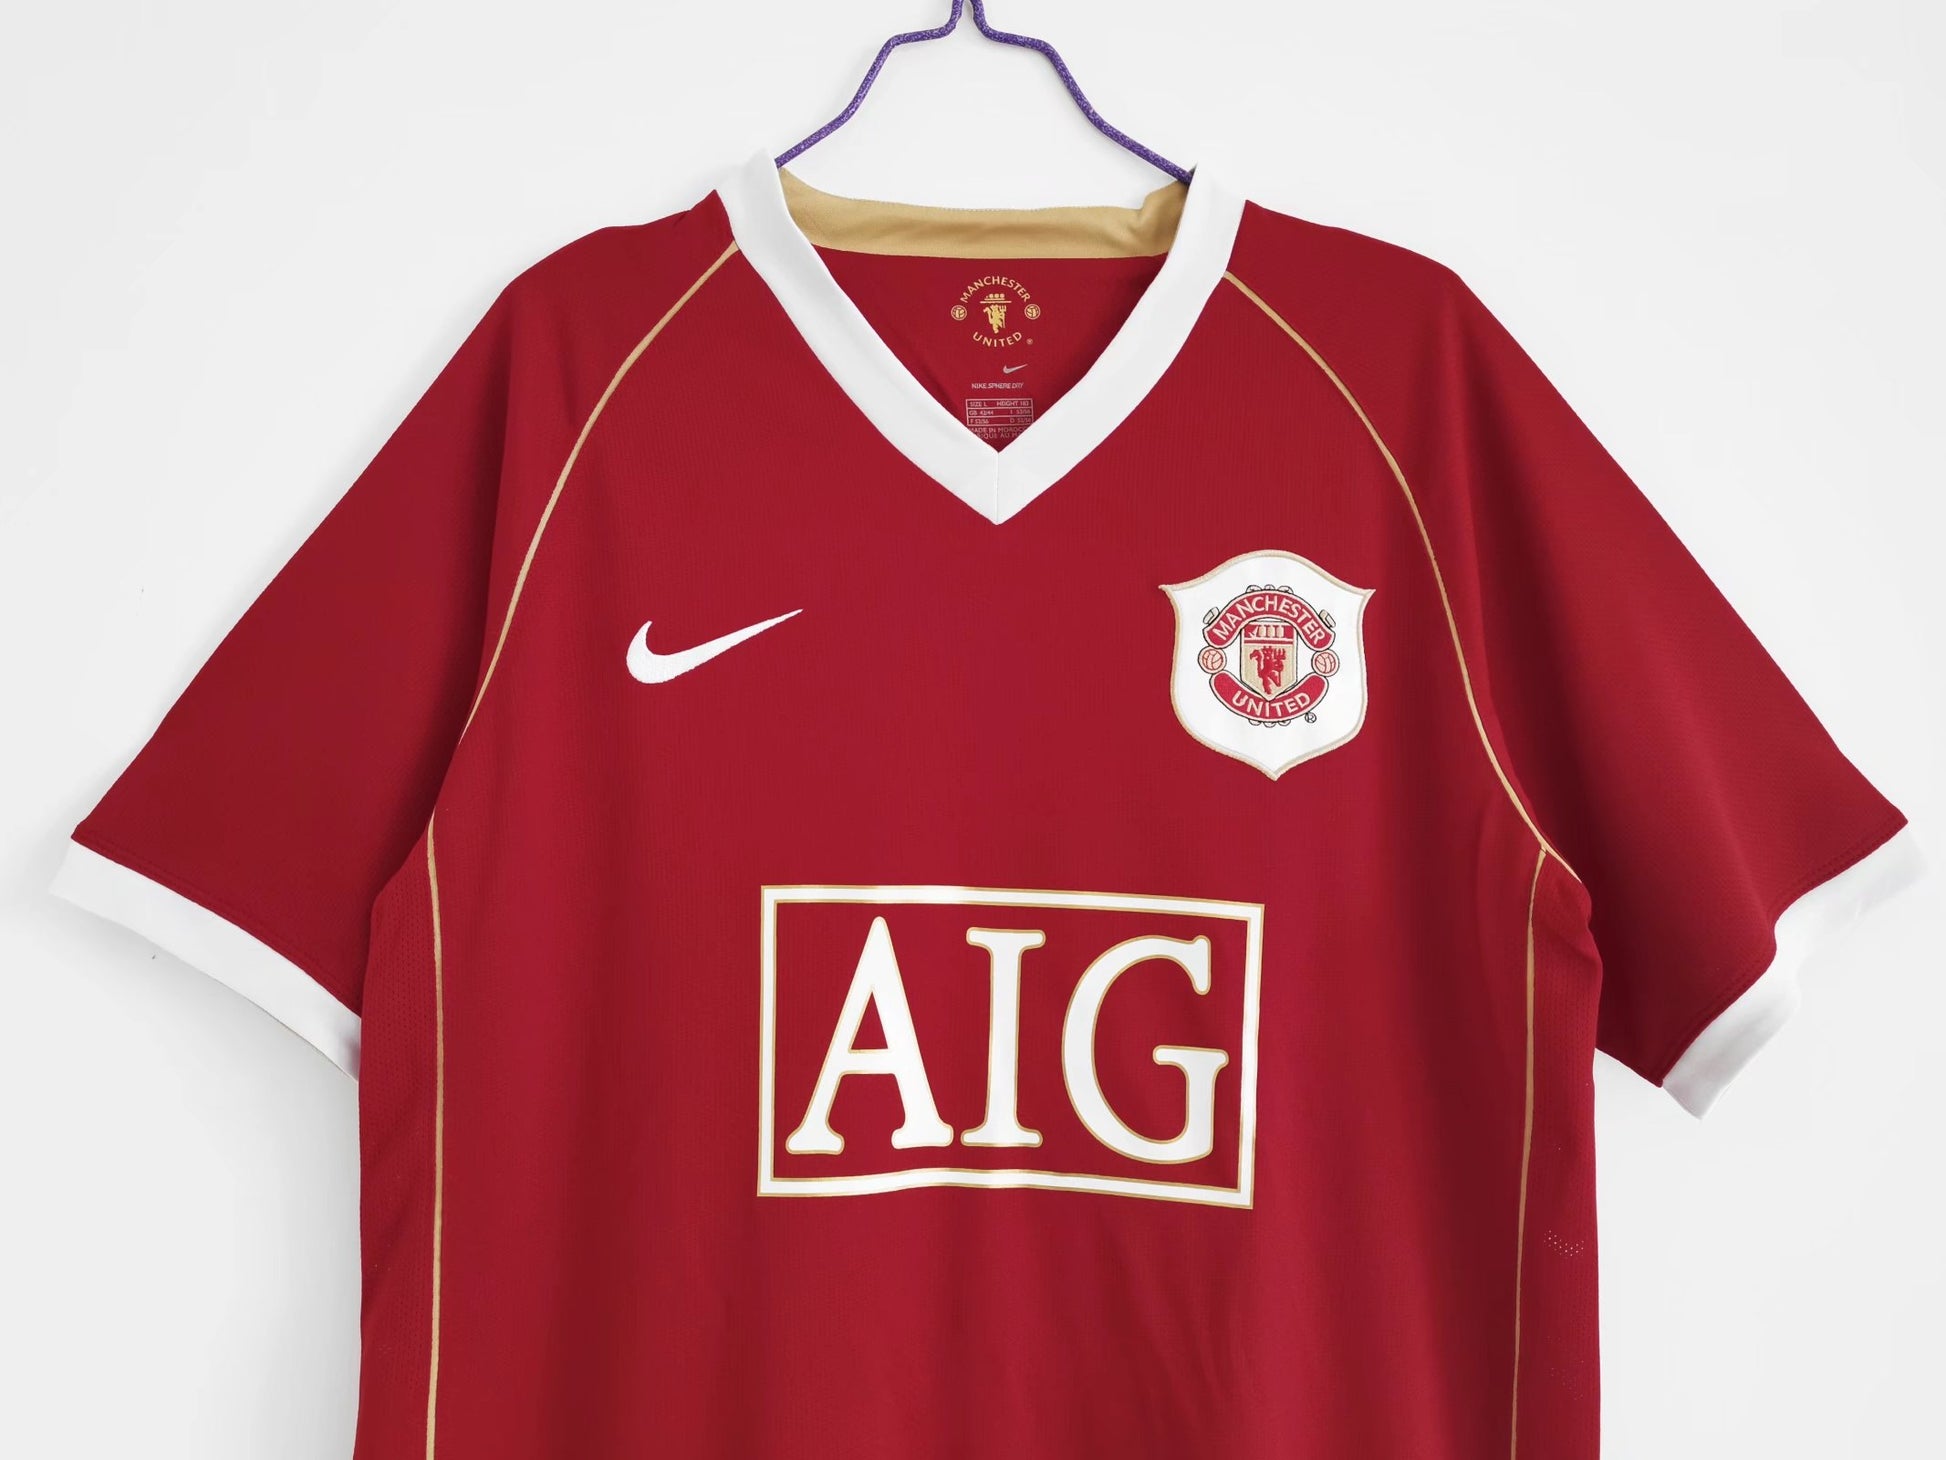 2006/07 Manchester United Home Retro Kit